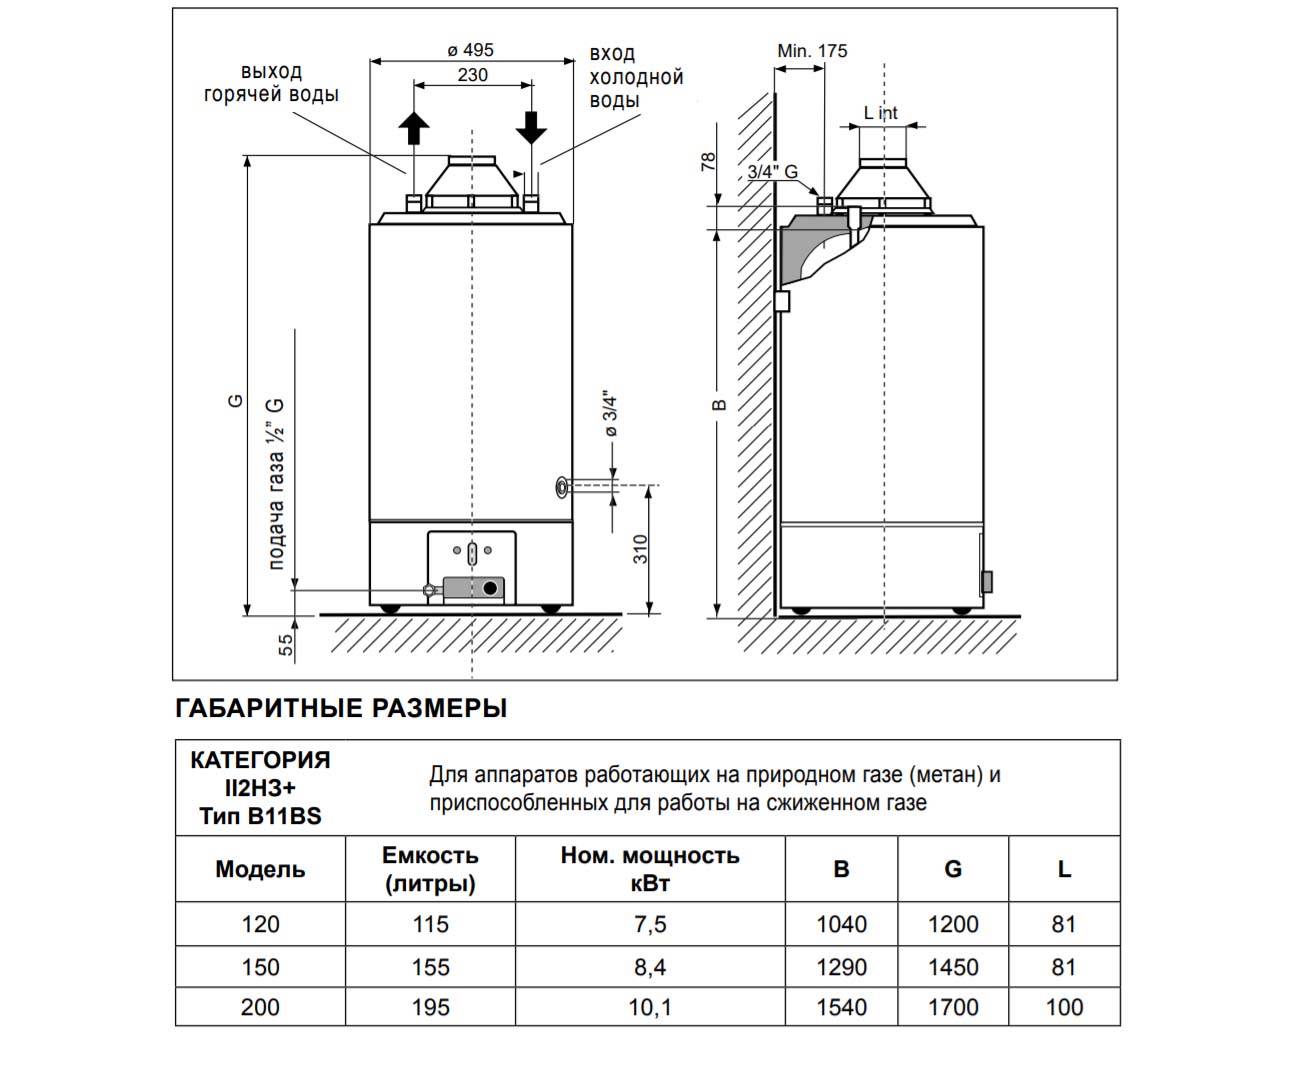 Особенности устройства газовых проточных колонок